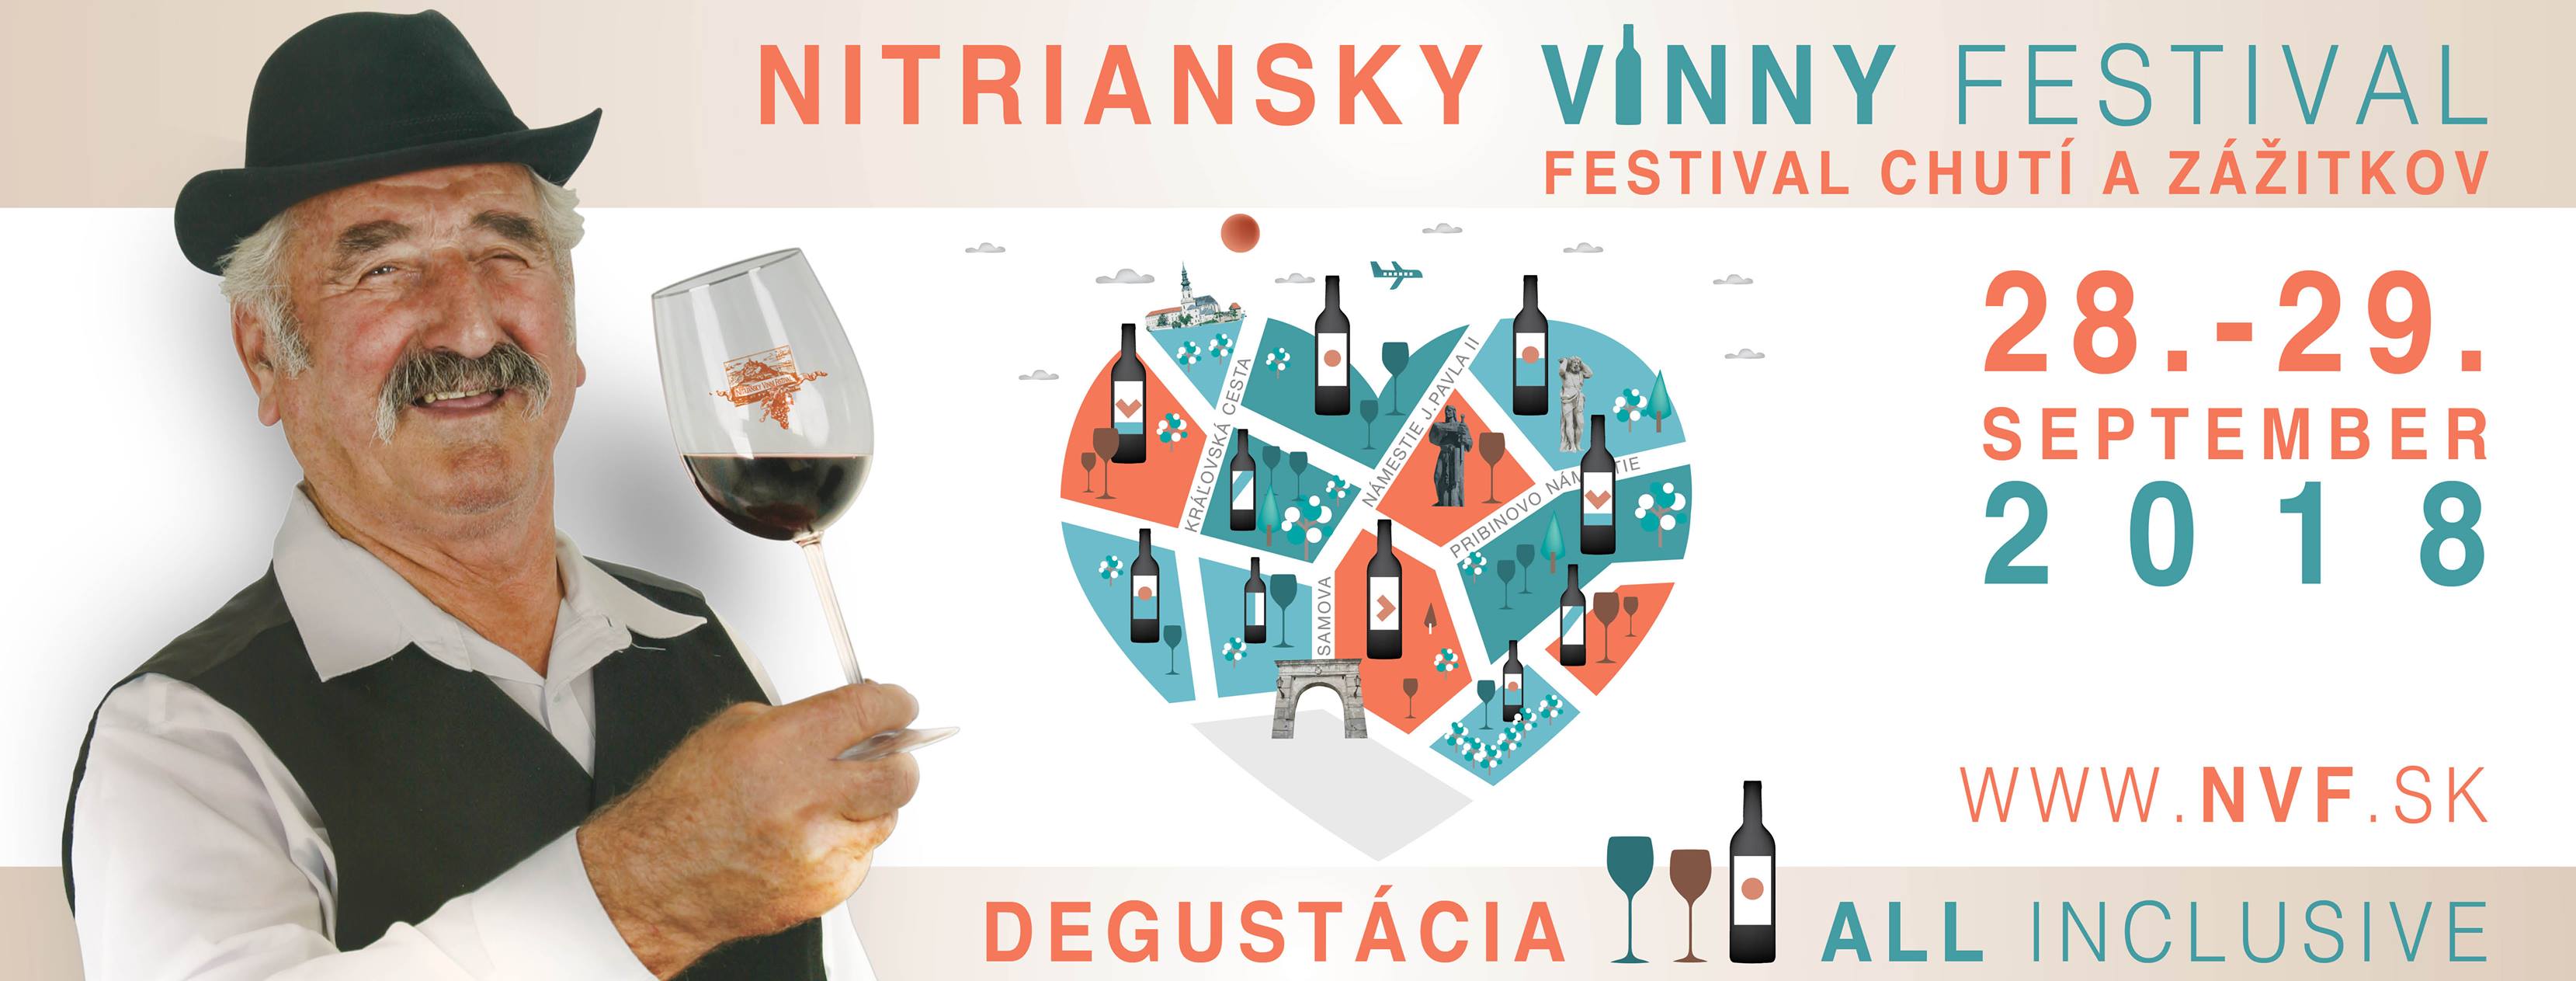 Nitriansky vnny festival Nitra 2018  9. ronk